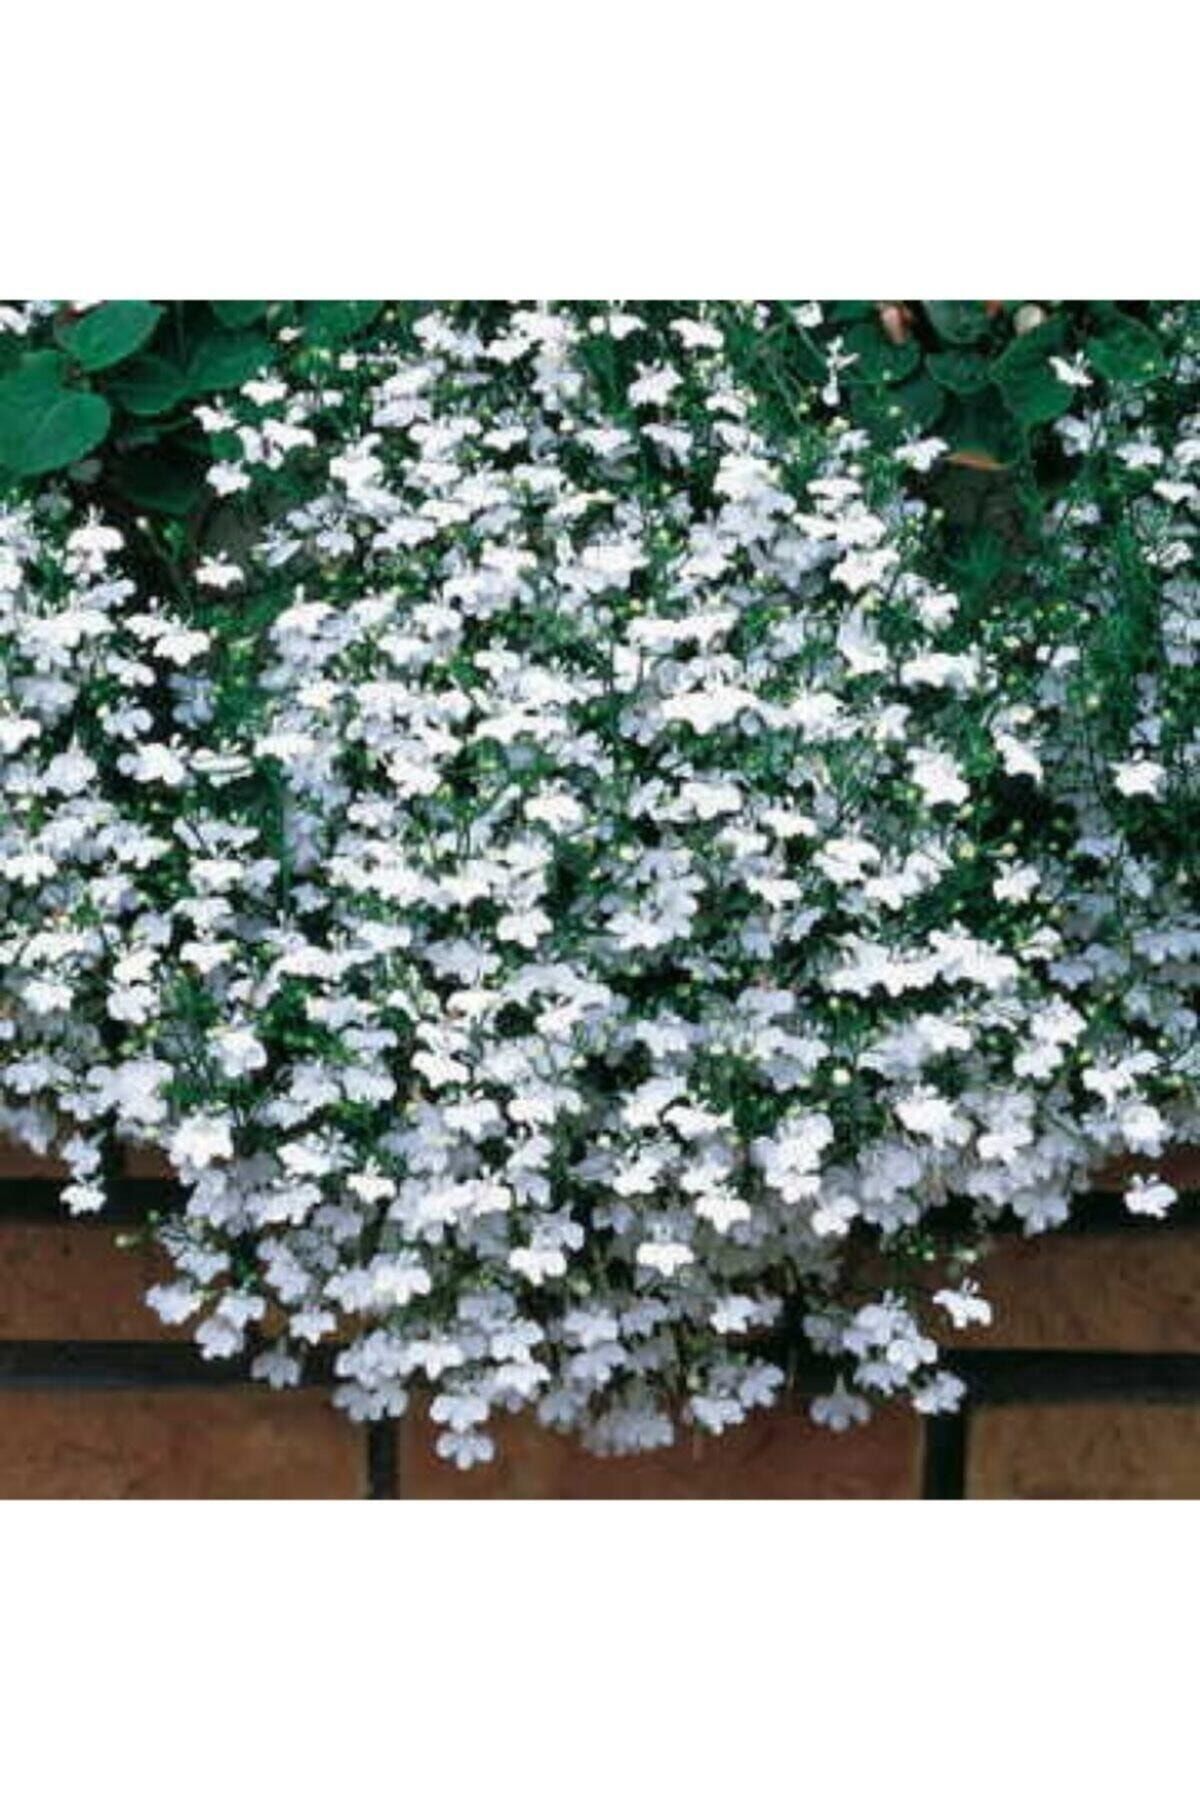 KAMONDO TOHUM 10 Adet Beyaz Renkli Sarkan Lobelya Çiçek Tohumu